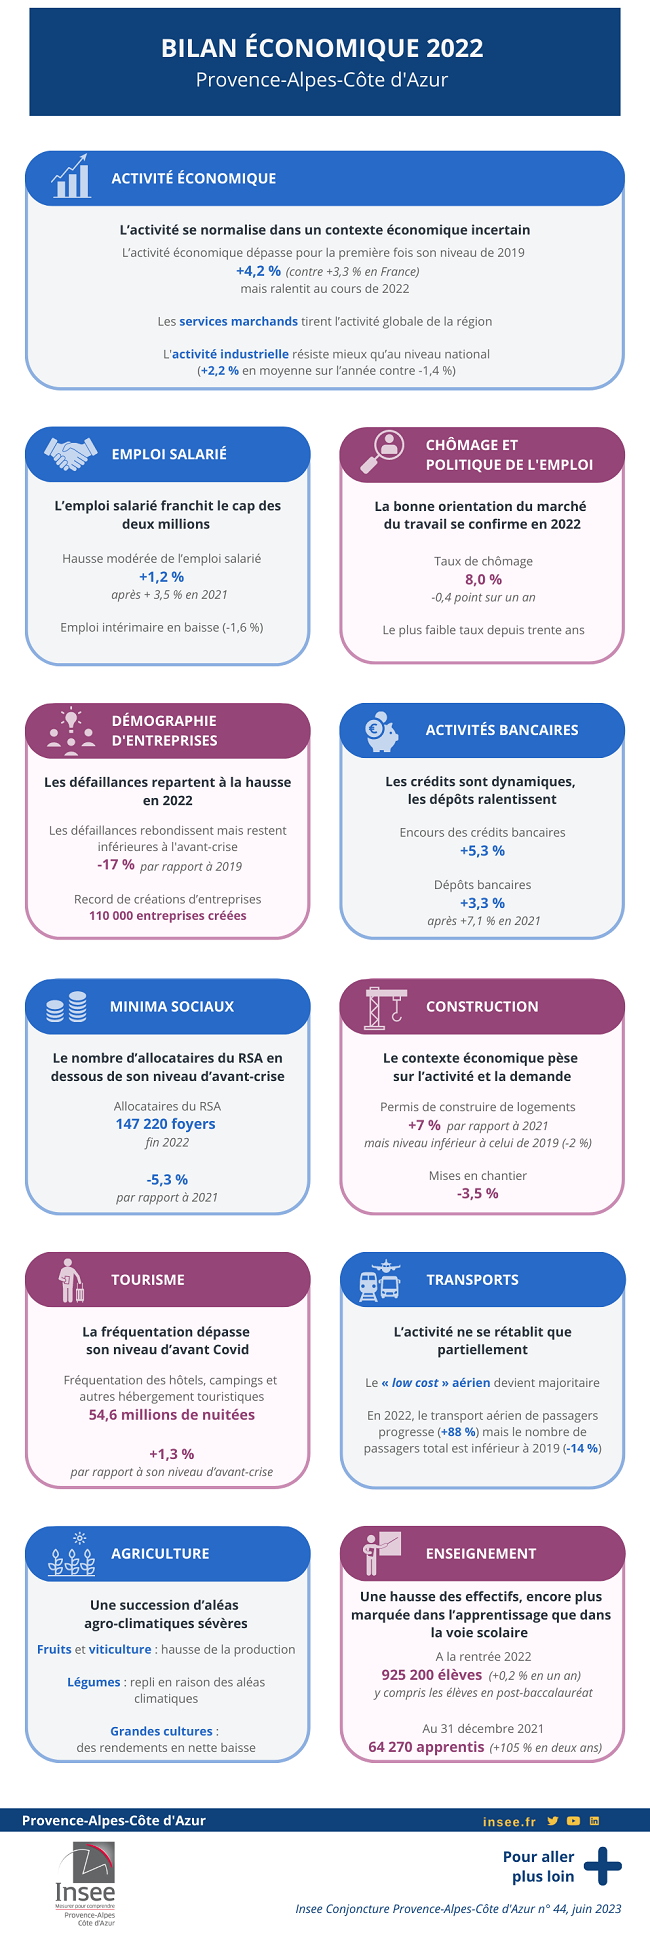 Bilan économique 2022 de Provence-Alpes-Côte d'Azur.